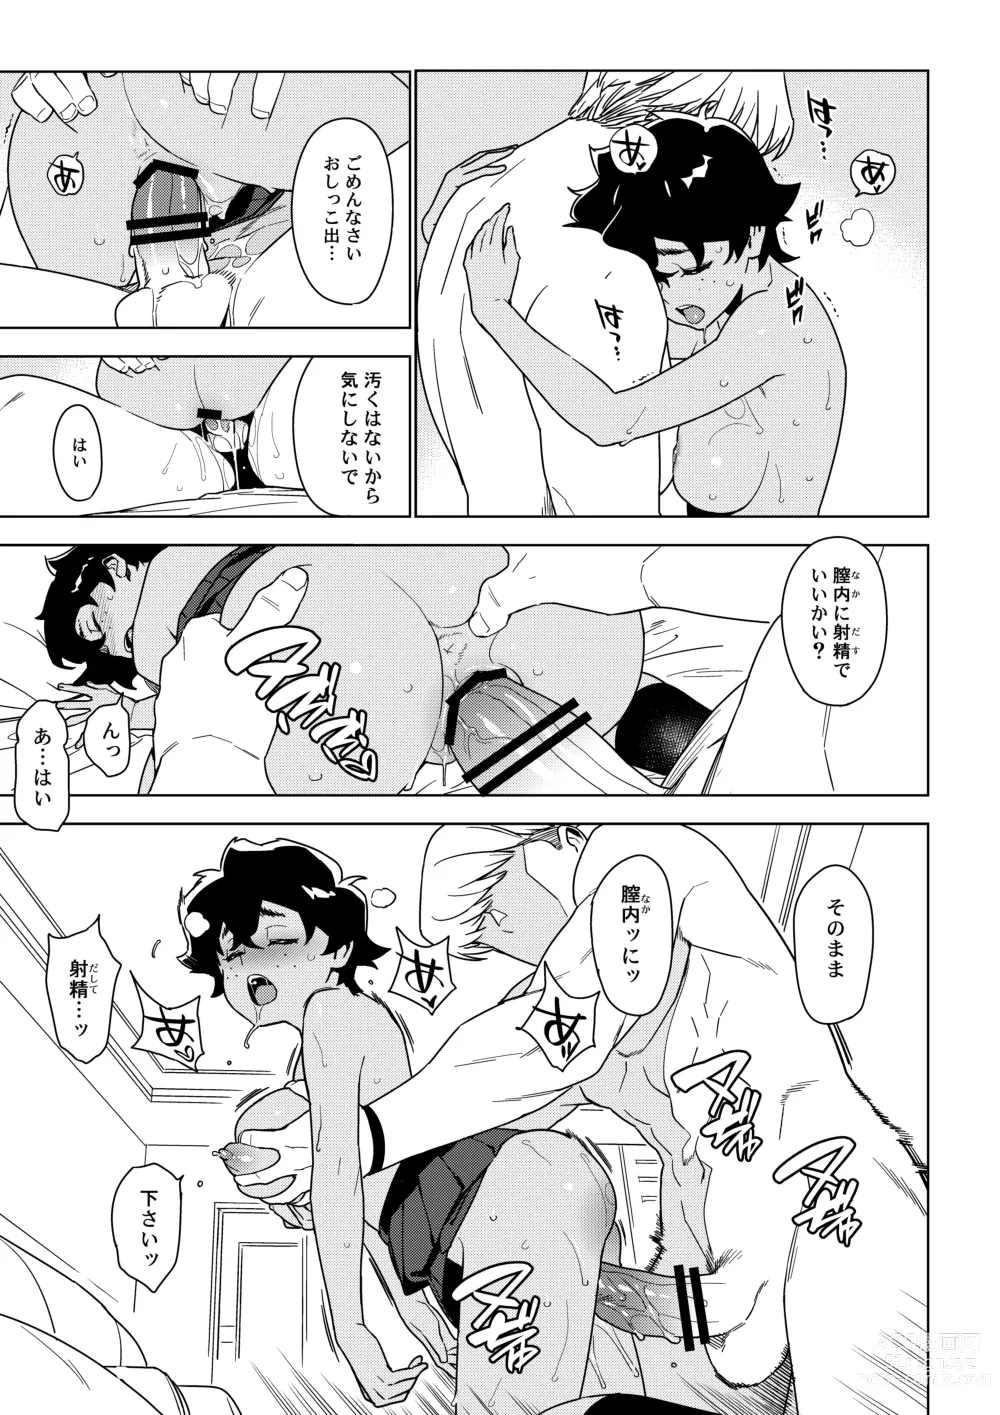 Page 22 of doujinshi Seiko